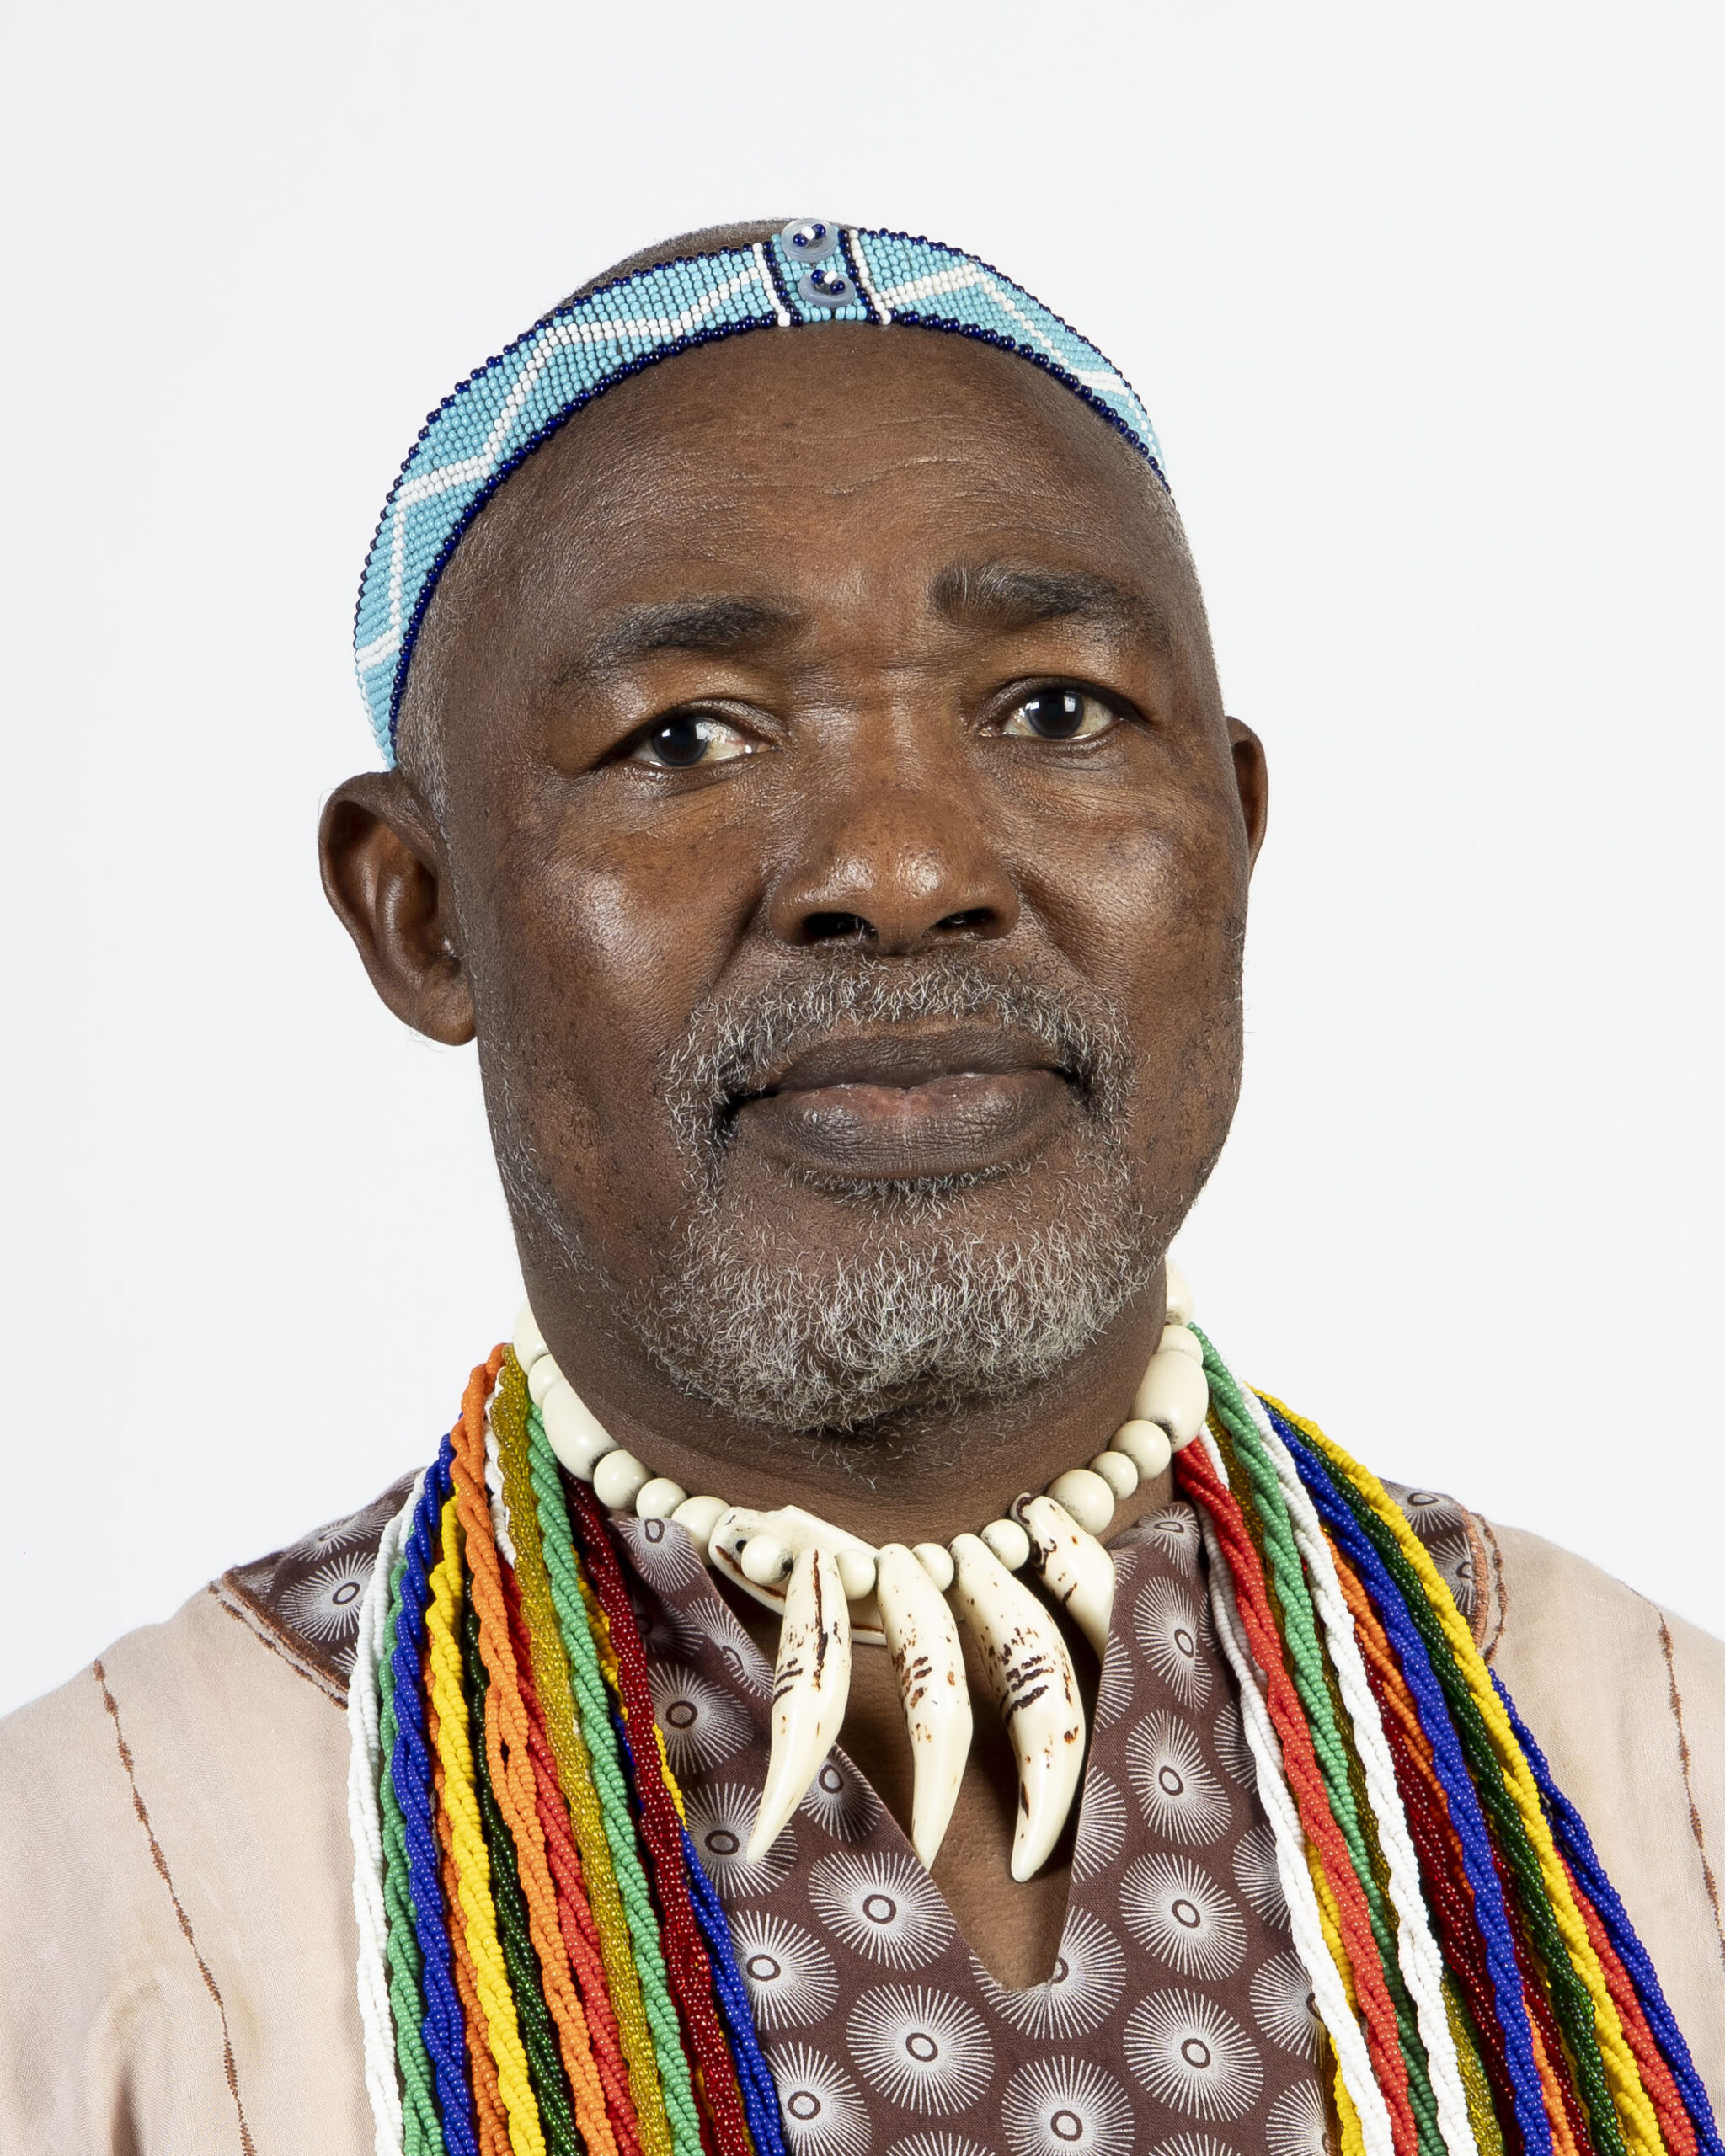 Mwelo Nonkonyana